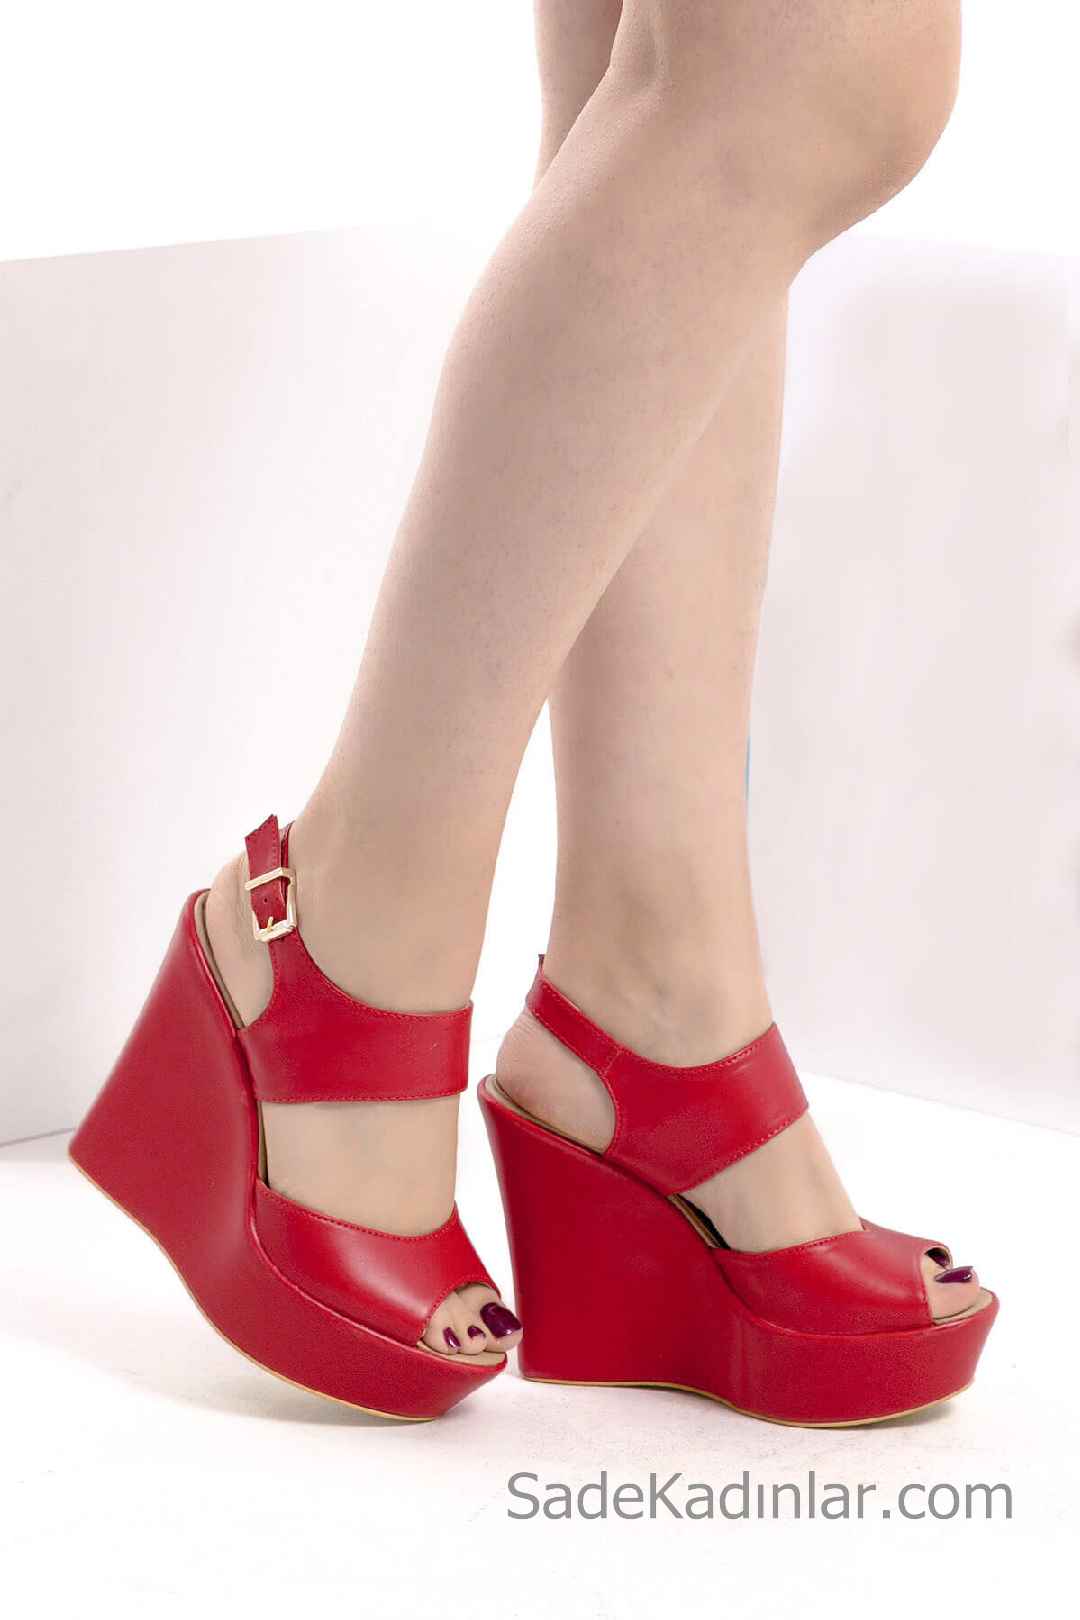 Dolgu Topuk Ayakkabı Modelleri Kırmızı Kalın Bantlı Yandan Tokalı